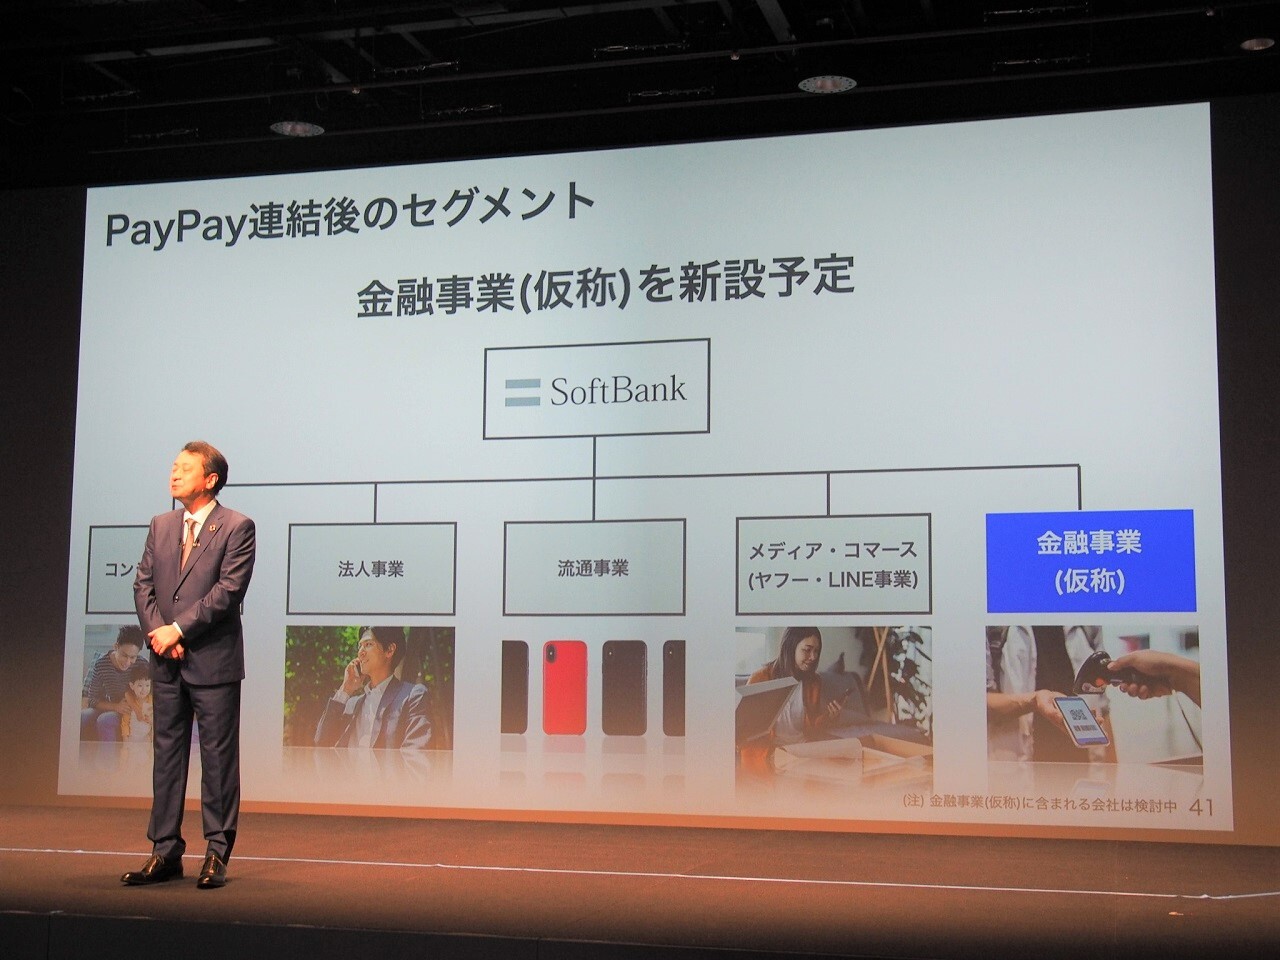 PayPayの連結化後、ソフトバンクの事業セグメントには金融事業を追加する予定であるなど、PayPayを中心とした金融、決済事業を事業の柱としていく方針が示された